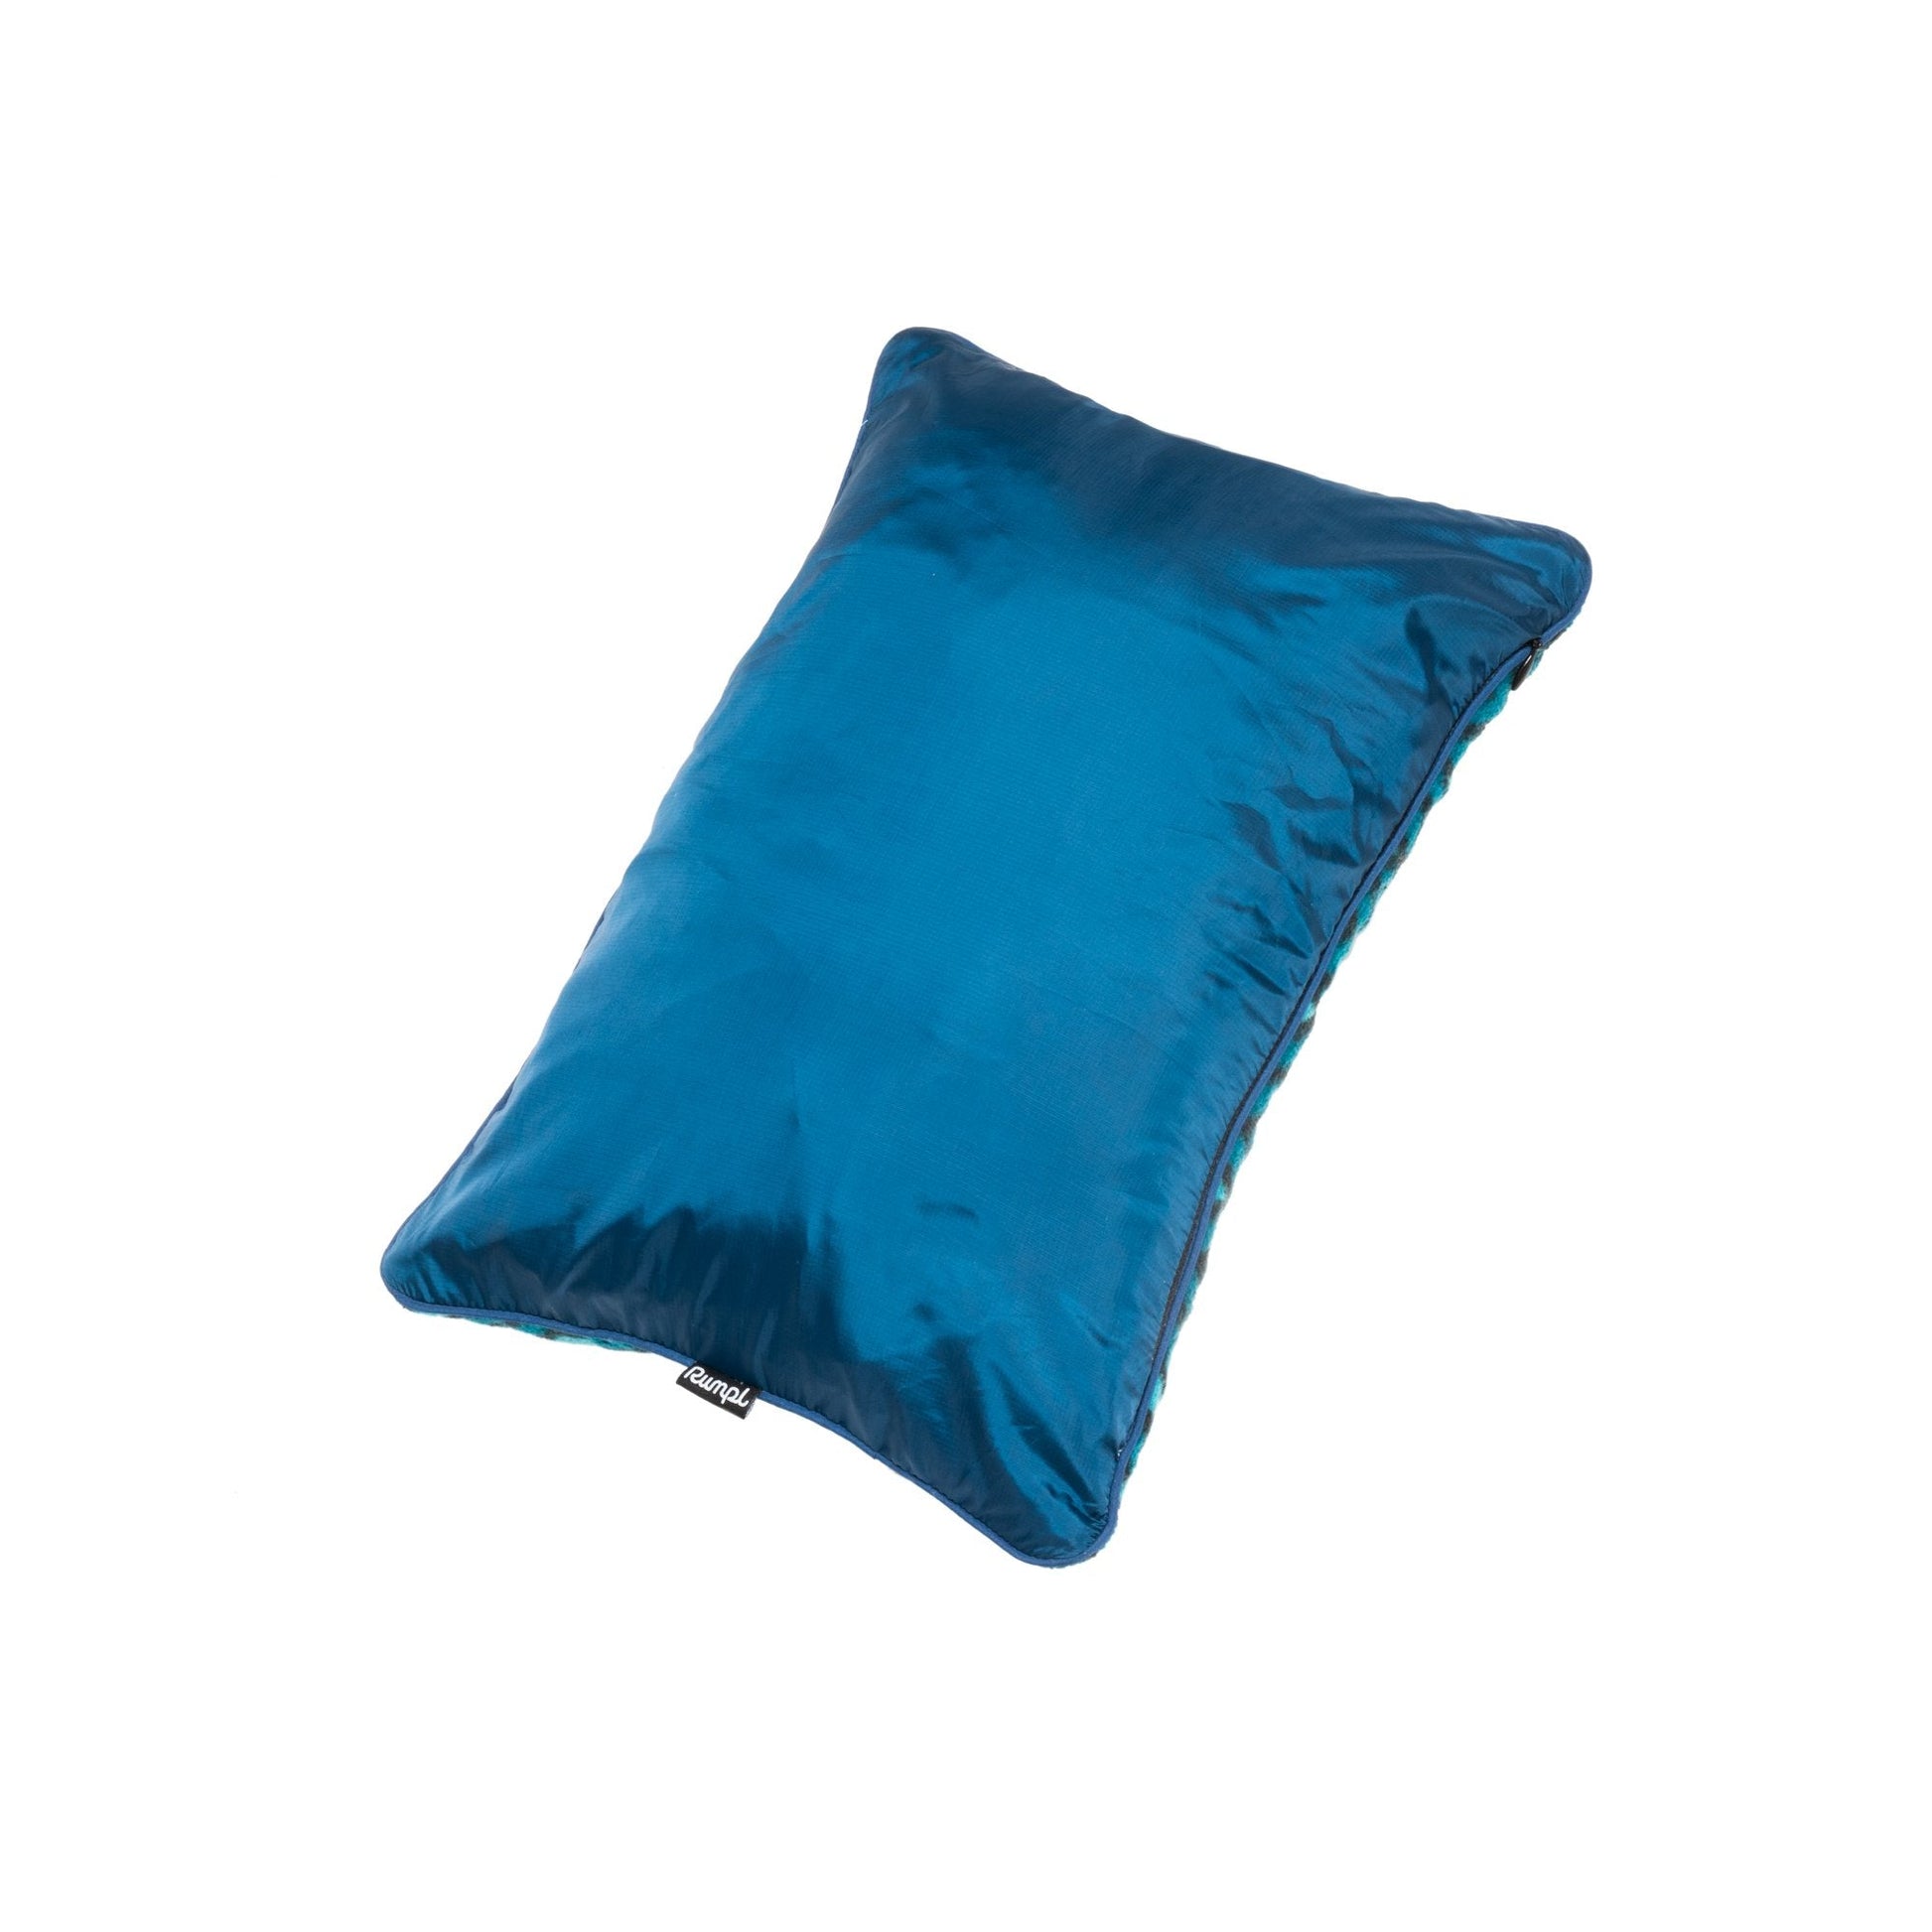 Rumpl | The Stuffable Pillowcase - Deepwater |  |  | Stuffable Pillow